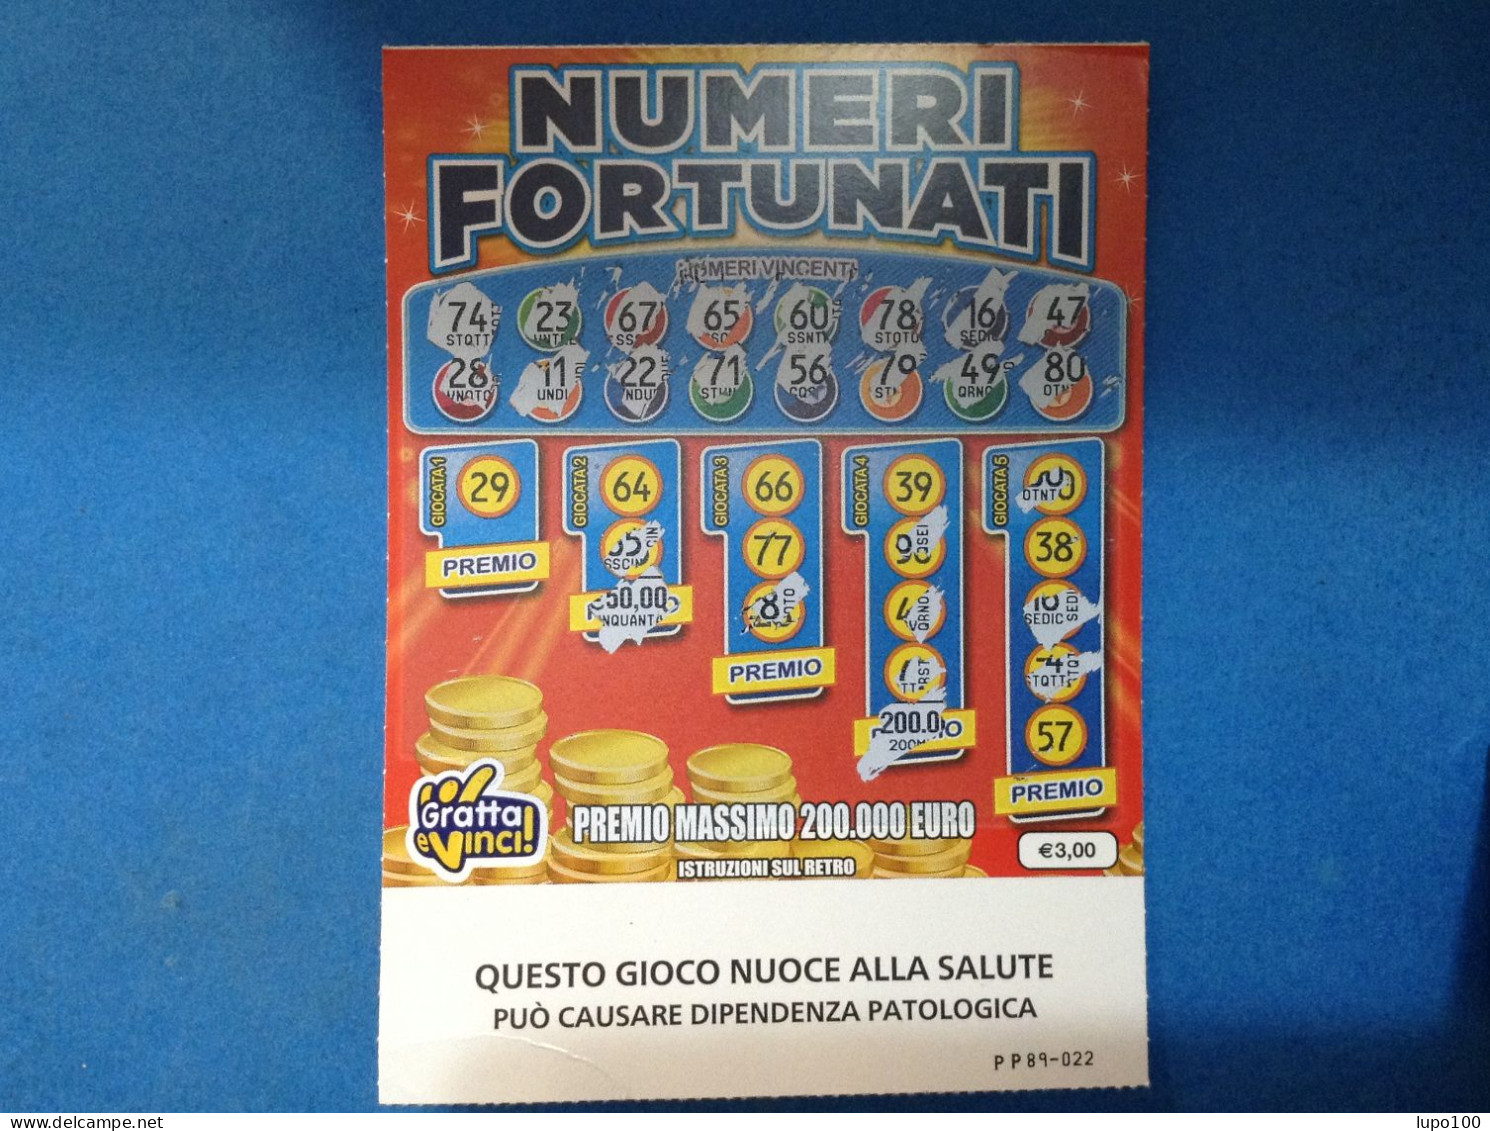 Lotteria Gratta E Vinci Numeri Fortunati Lotto 3049 Sigla PP Variante FSC Cartone A Sostegno Della Gestione Forestale - Billets De Loterie